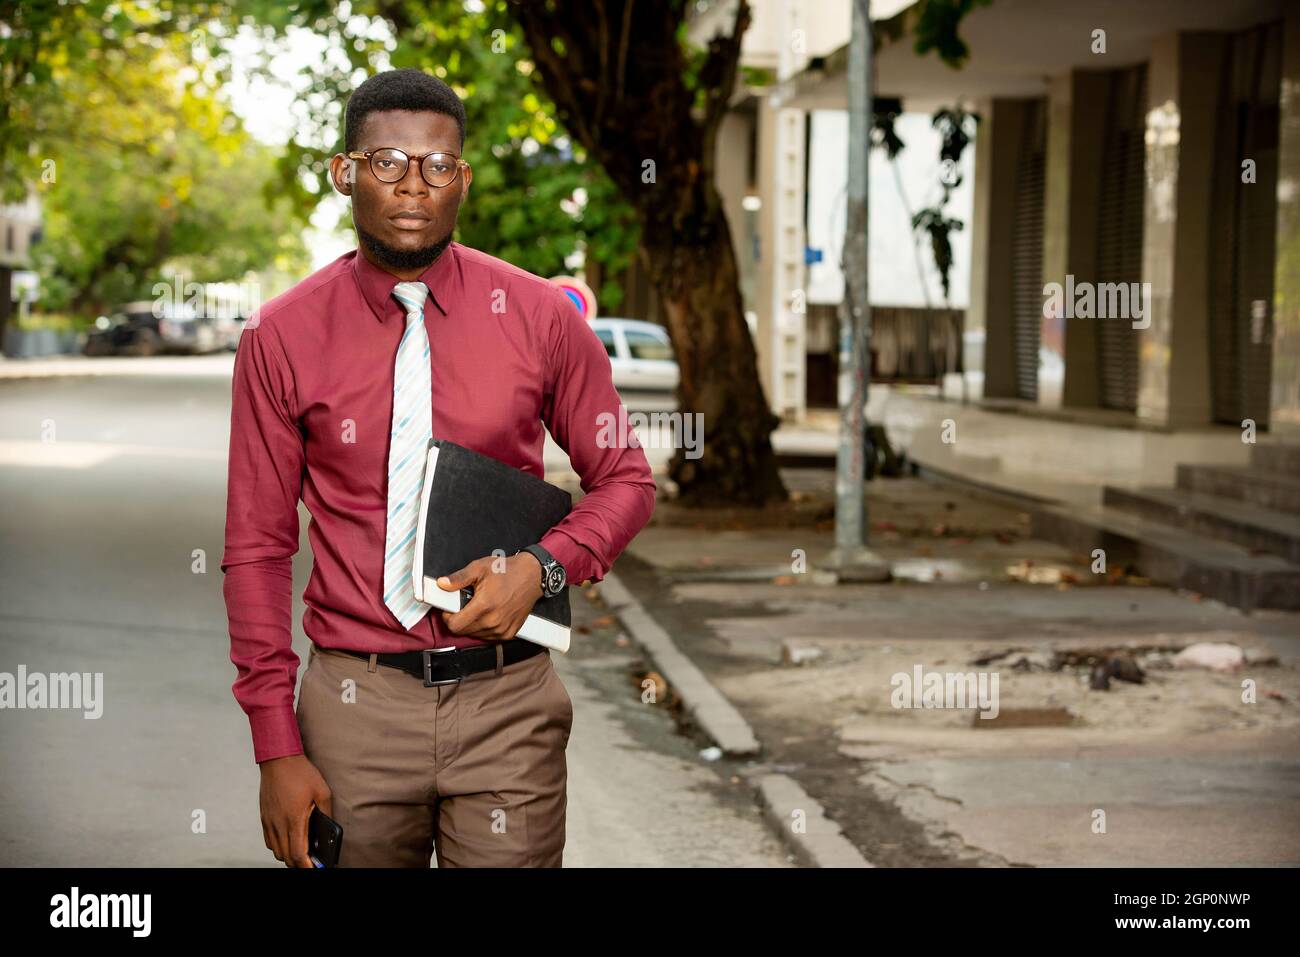 Beau homme africain qui se promette dans la rue et qui tient des documents.  Il porte une chemise rouge bordeaux très élégante avec cravate et lunettes  Photo Stock - Alamy